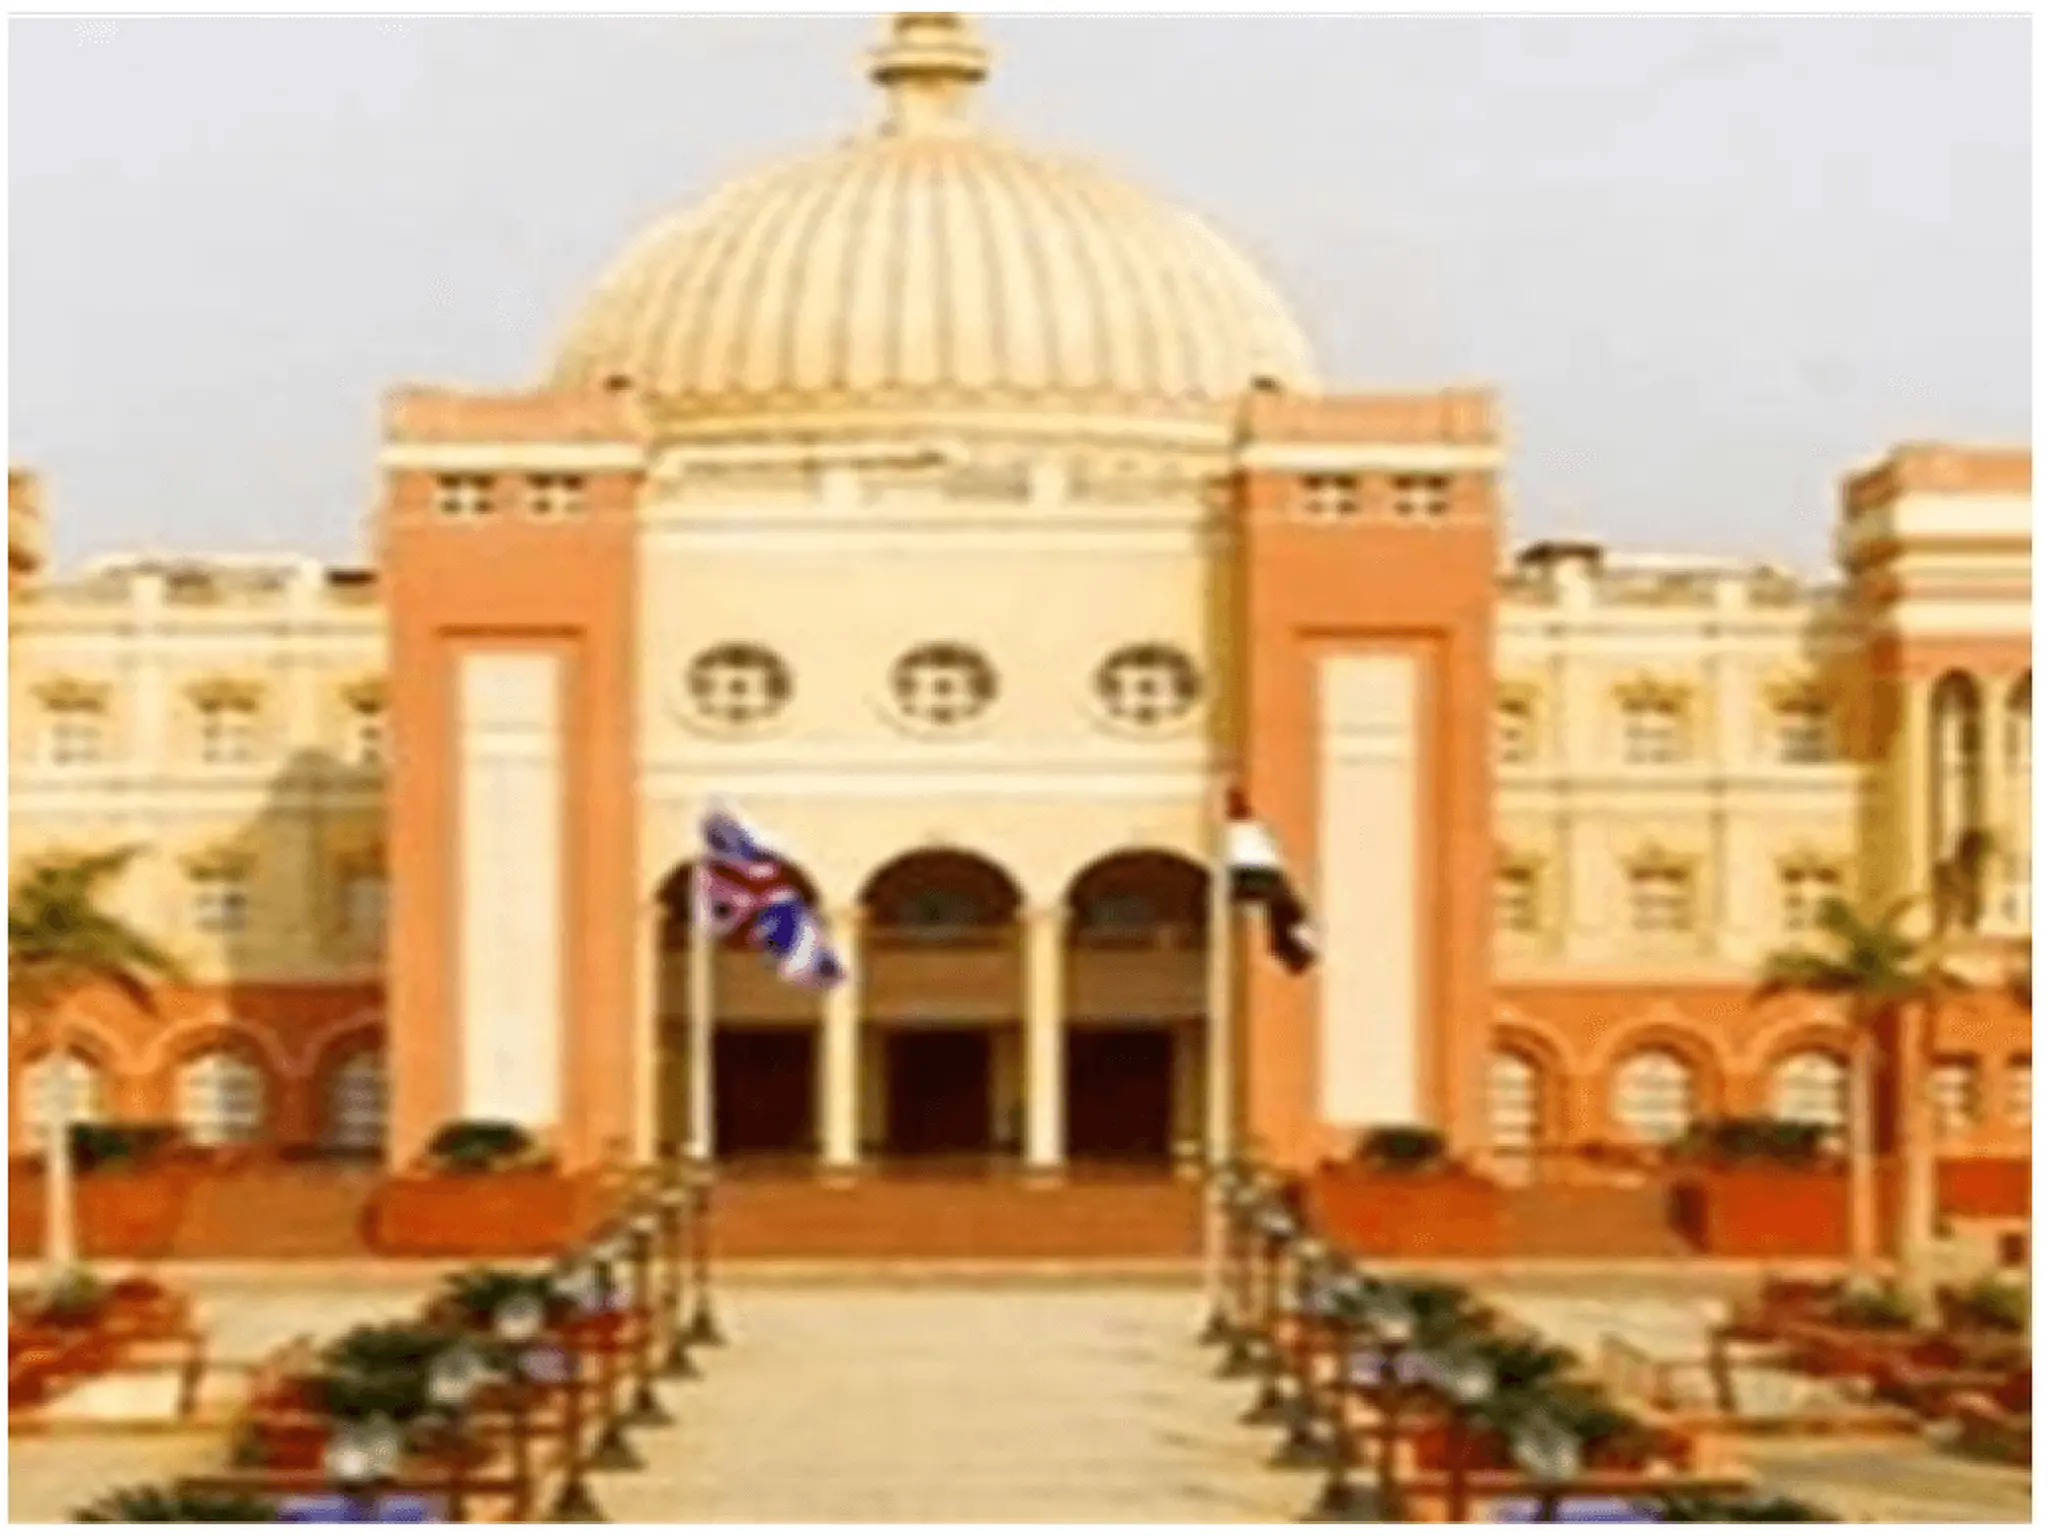 تنسيق الجامعة البريطانية في مصر للعام 2022-2023